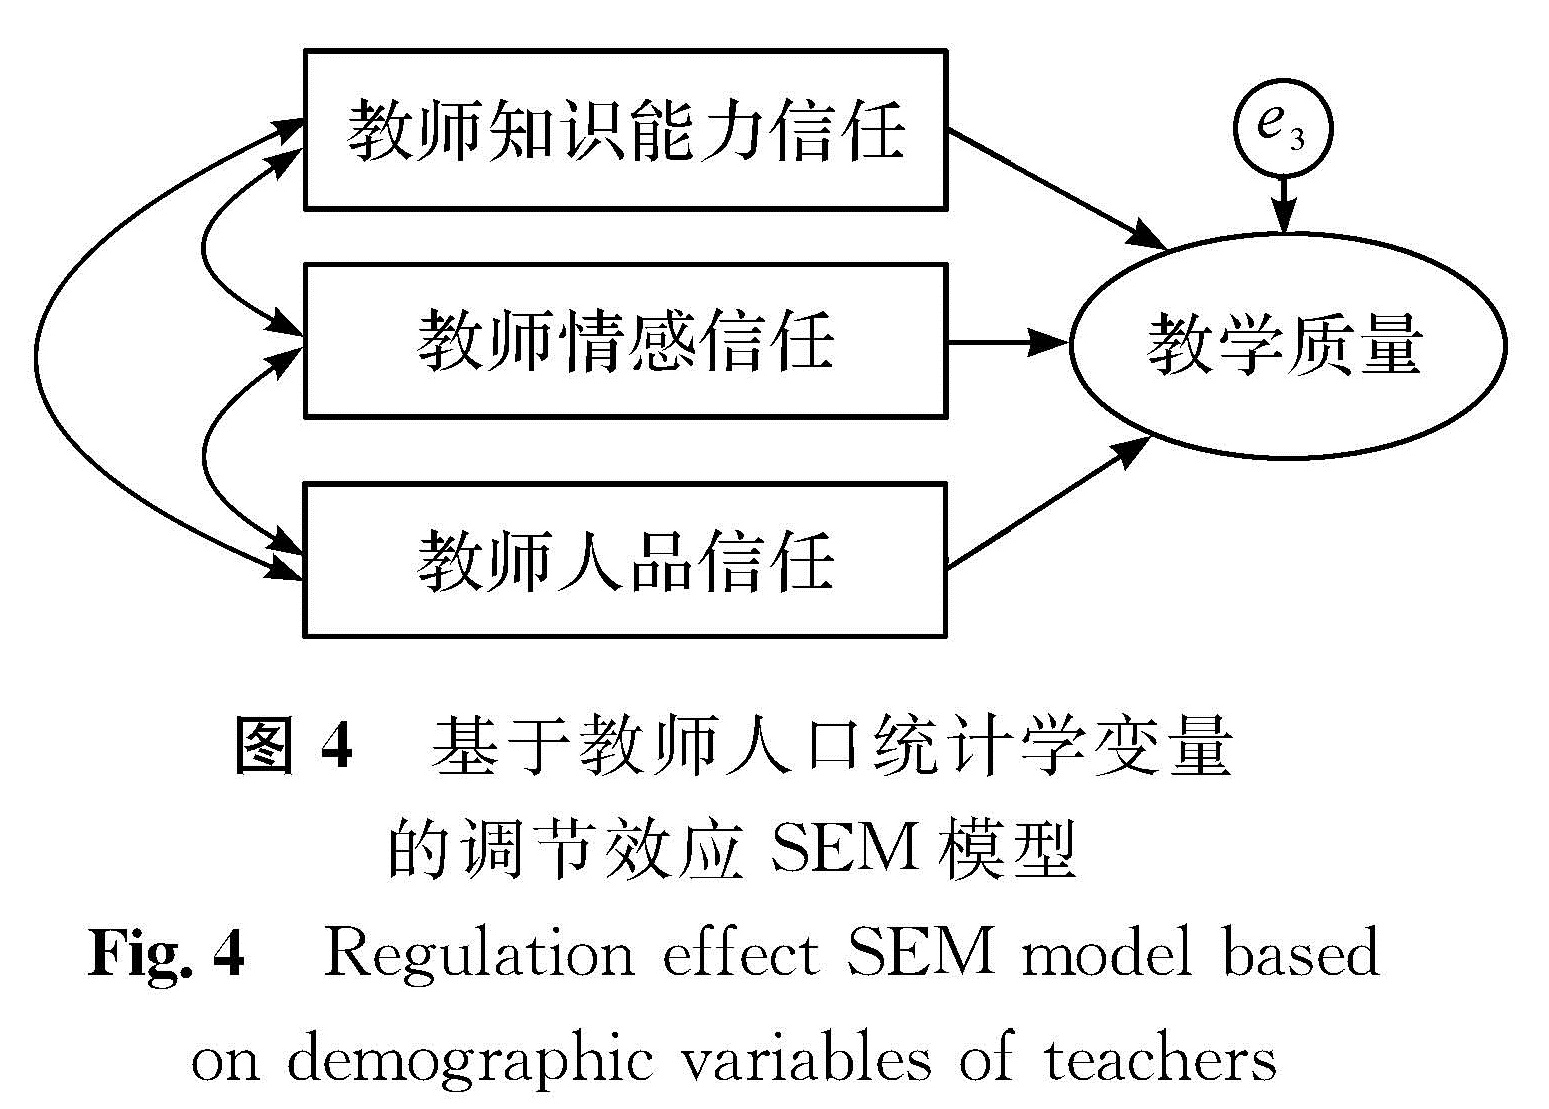 图4 基于教师人口统计学变量的调节效应SEM模型<br/>Fig.4 Regulation effect SEM model based on demographic variables of teachers